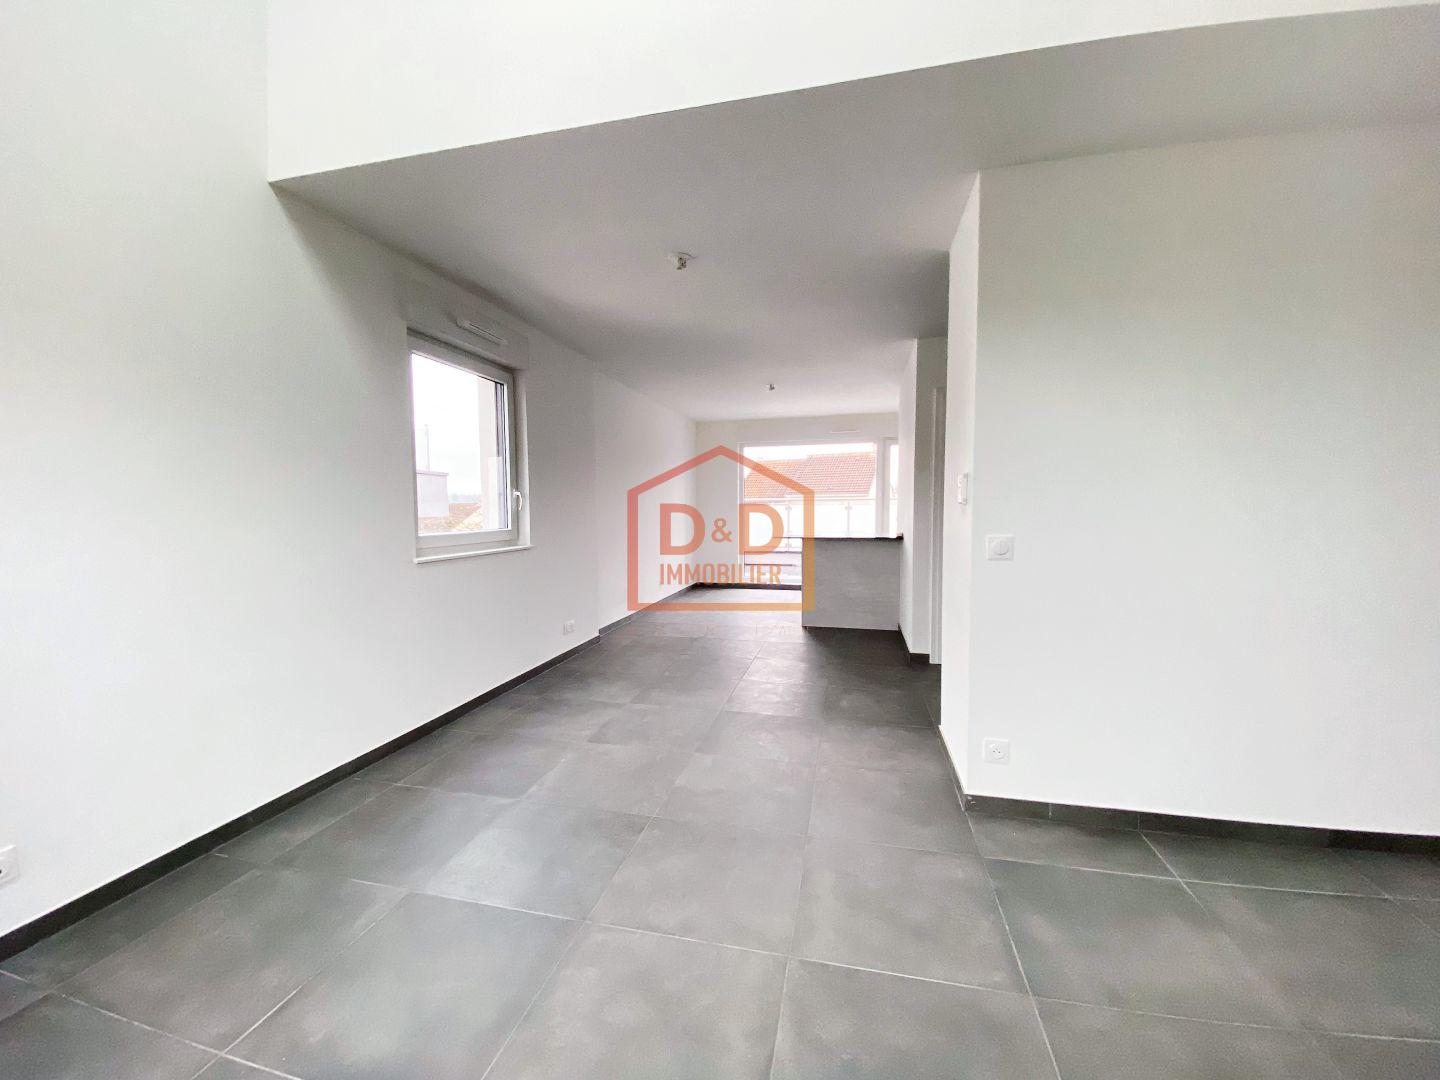 Appartement à mondorff, 70,79 m², 2 chambres, 1 salle de bain, 1 300 €/mois